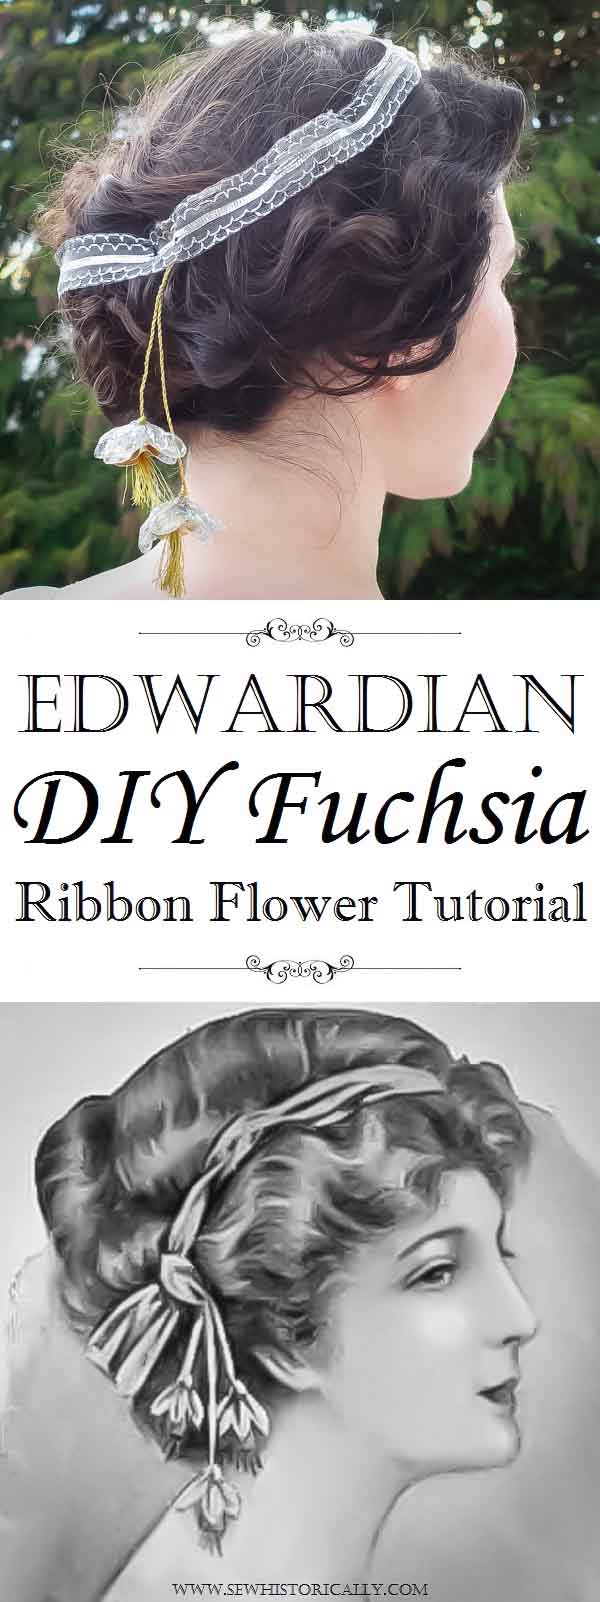 Edwardian DIY Fuchsia Ribbon Flower Tutorial